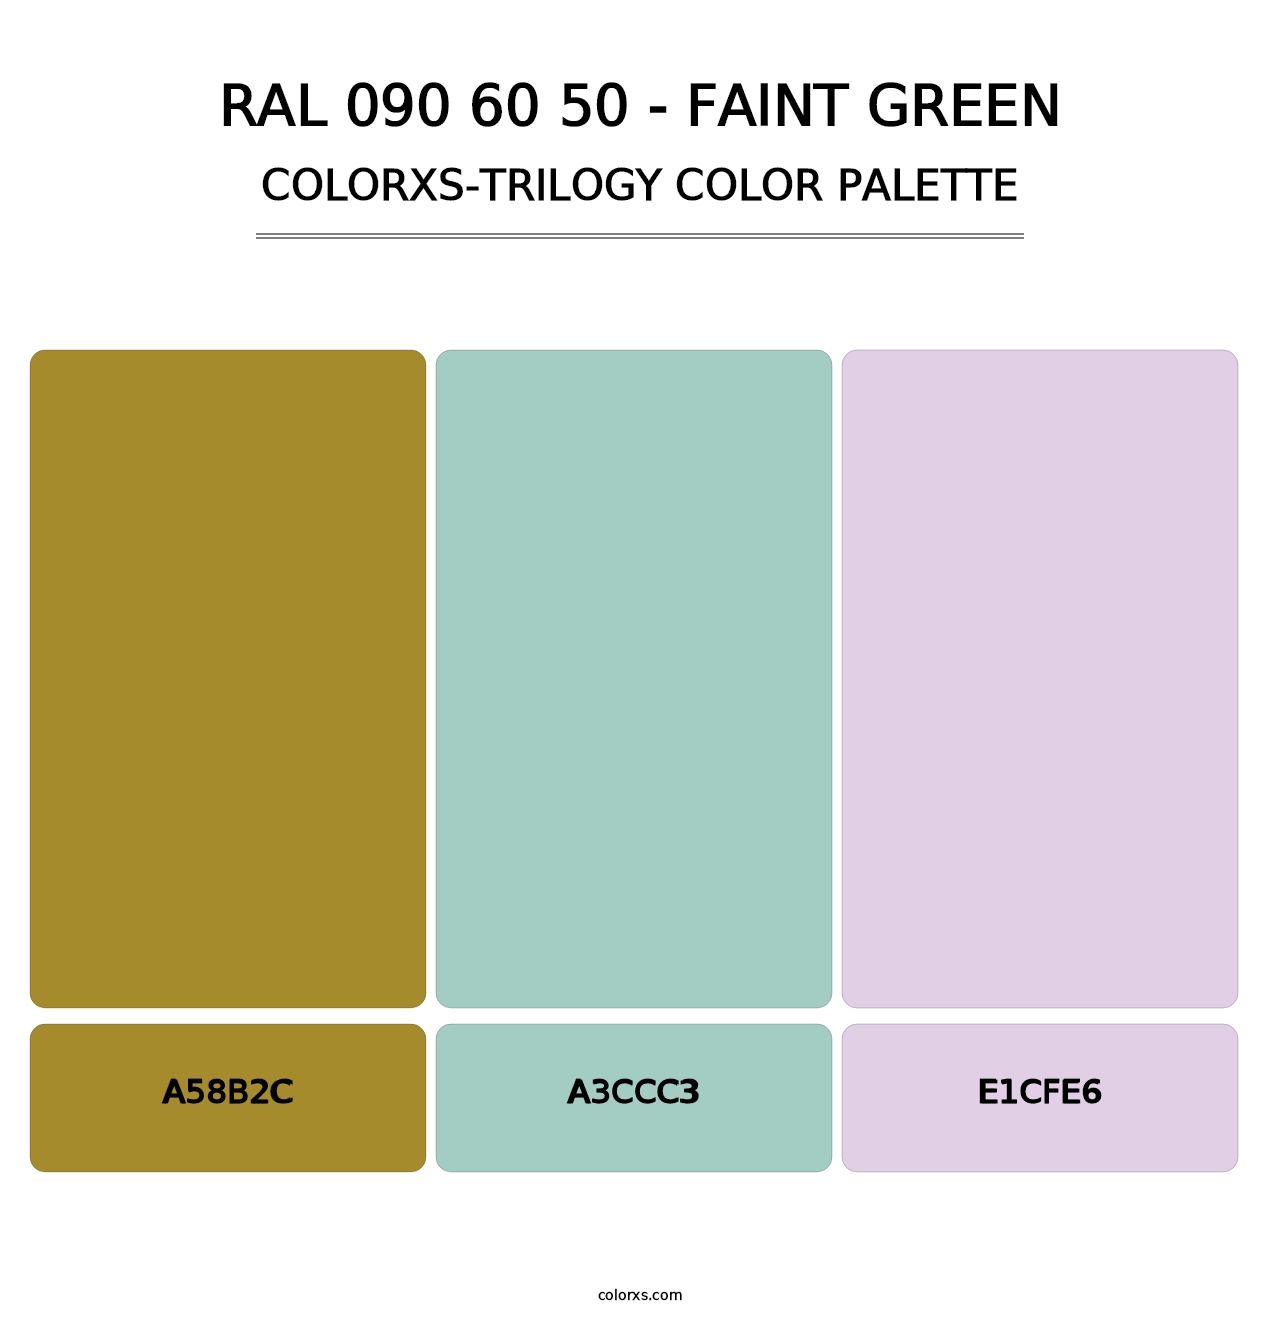 RAL 090 60 50 - Faint Green - Colorxs Trilogy Palette